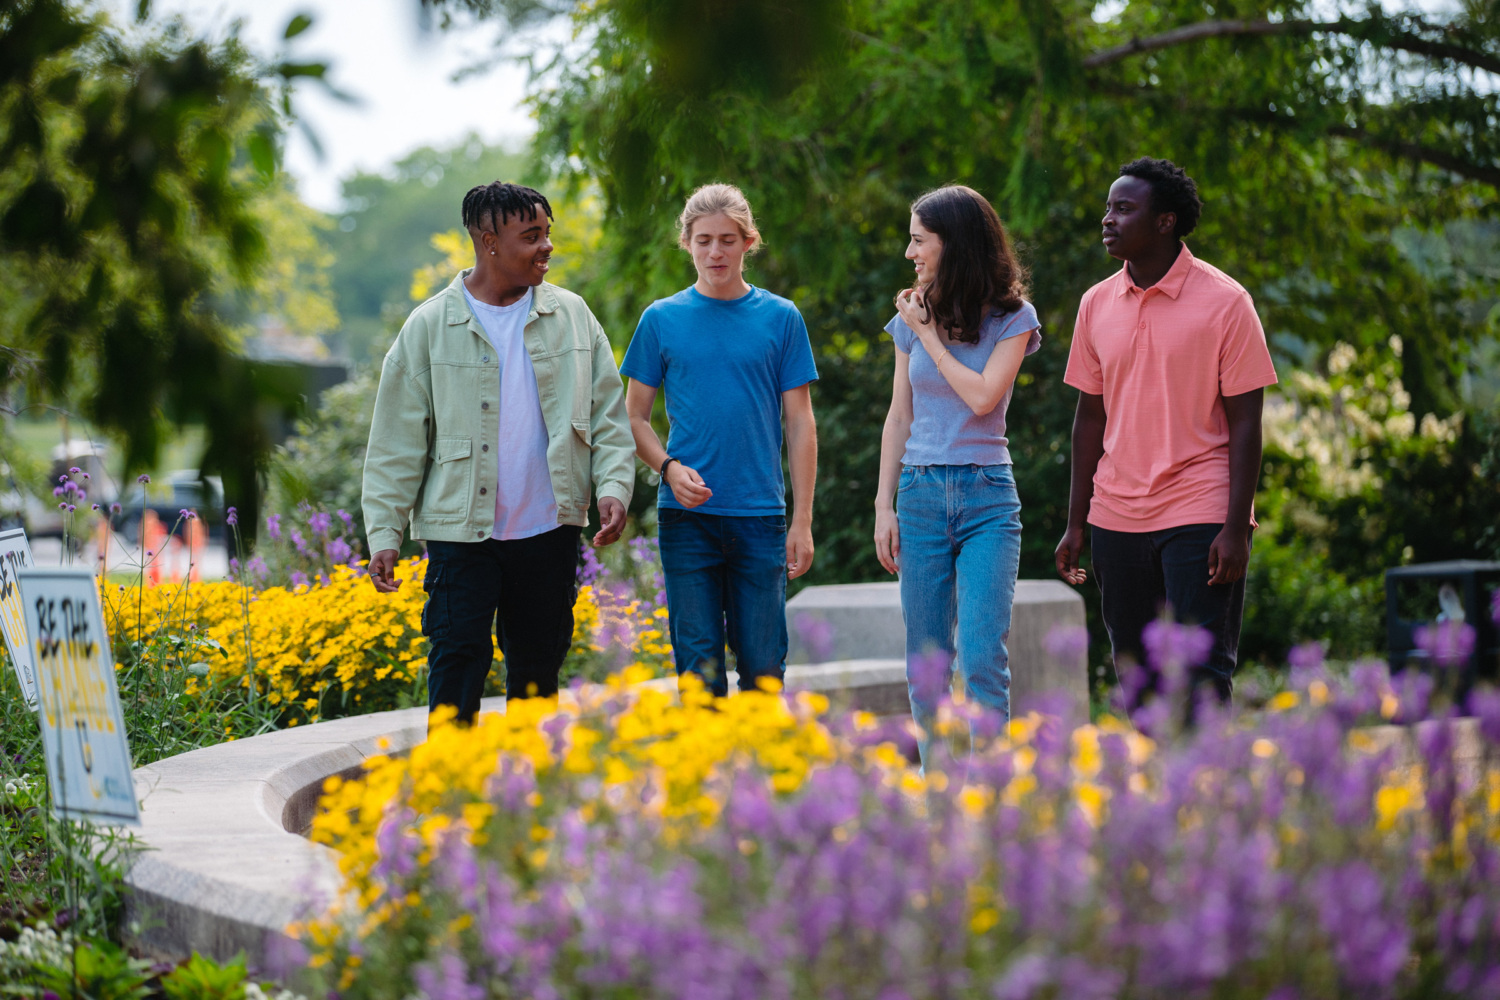 Danielle Wasserman walking outside in a flower garden with 3 high school students.